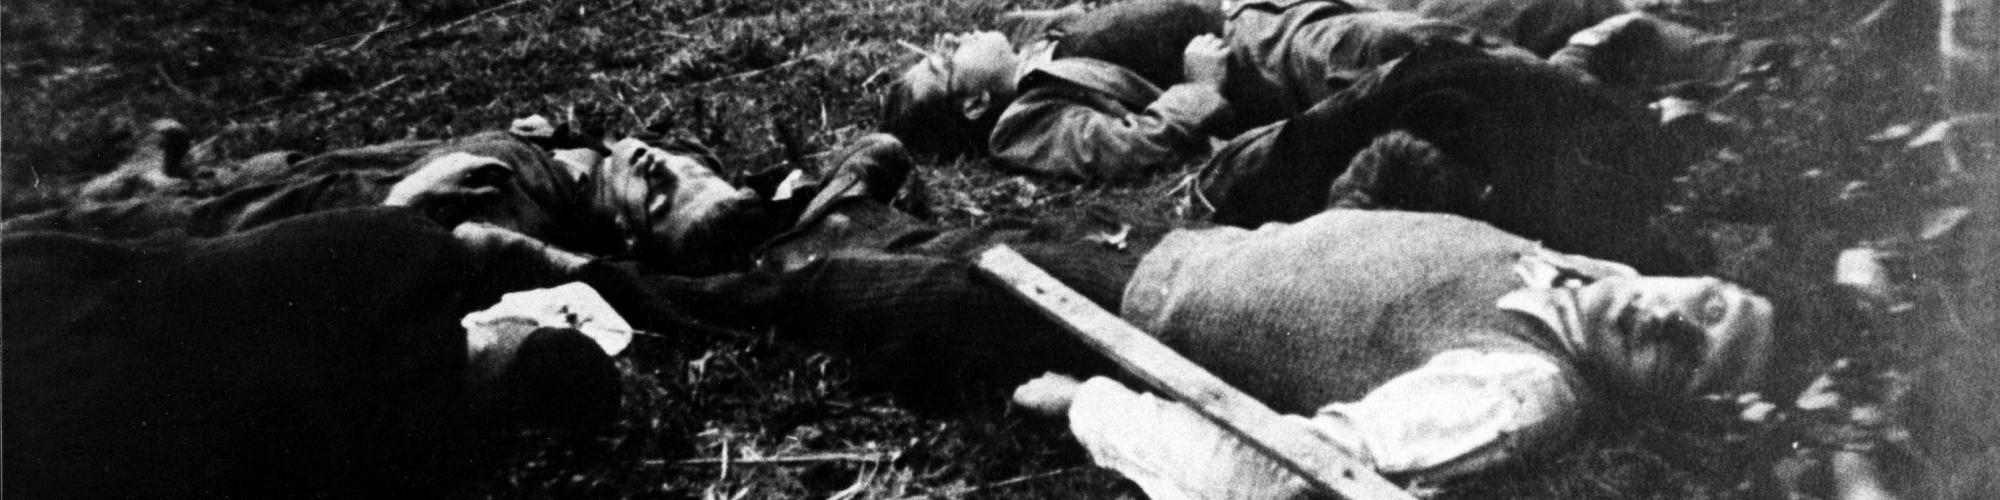 Massacre de Wodecq le 5 septembre 1944, photo n°28226, copyrights CegeSoma/Archives de l'Etat.